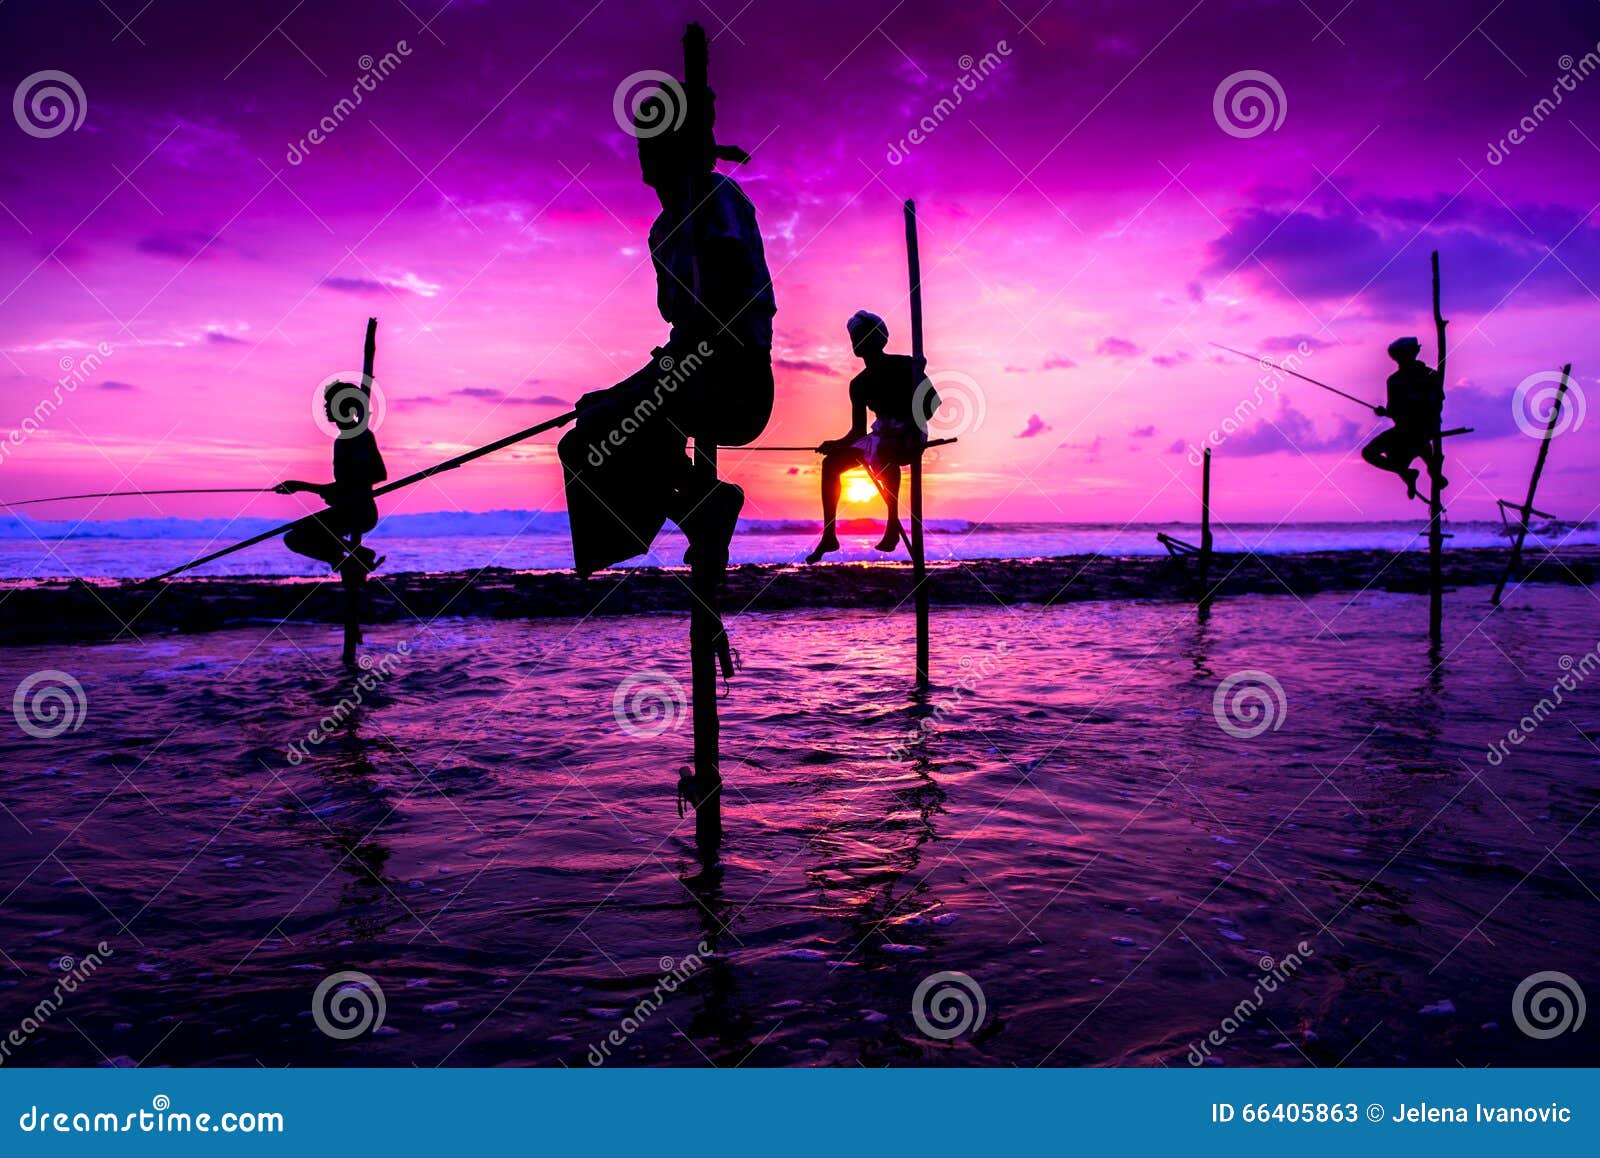 Pêcheur d'échasse dans Koggala, Sri Lanka. KOGGALA, SRI LANKA - 27 NOVEMBRE 2015 : Hommes locaux pêchant de la manière traditionnelle La pêche d'échasse est unique au SL Il a commencé dans WWII sur la côte sud, mais aujourd'hui est en grande partie pratiqué en tant qu'attraction touristique